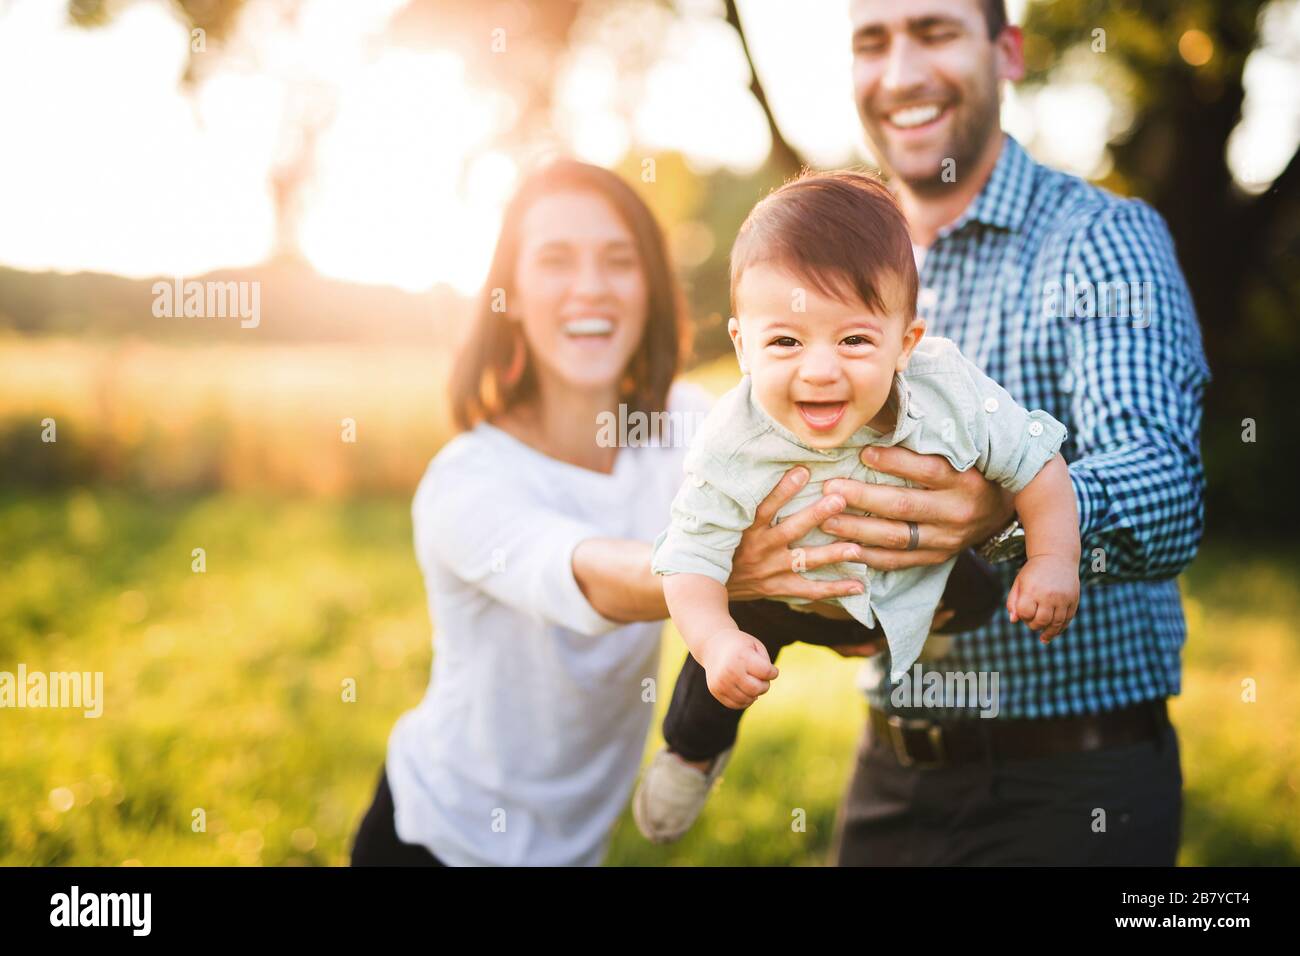 Famille de trois personnes en train de rire Banque D'Images